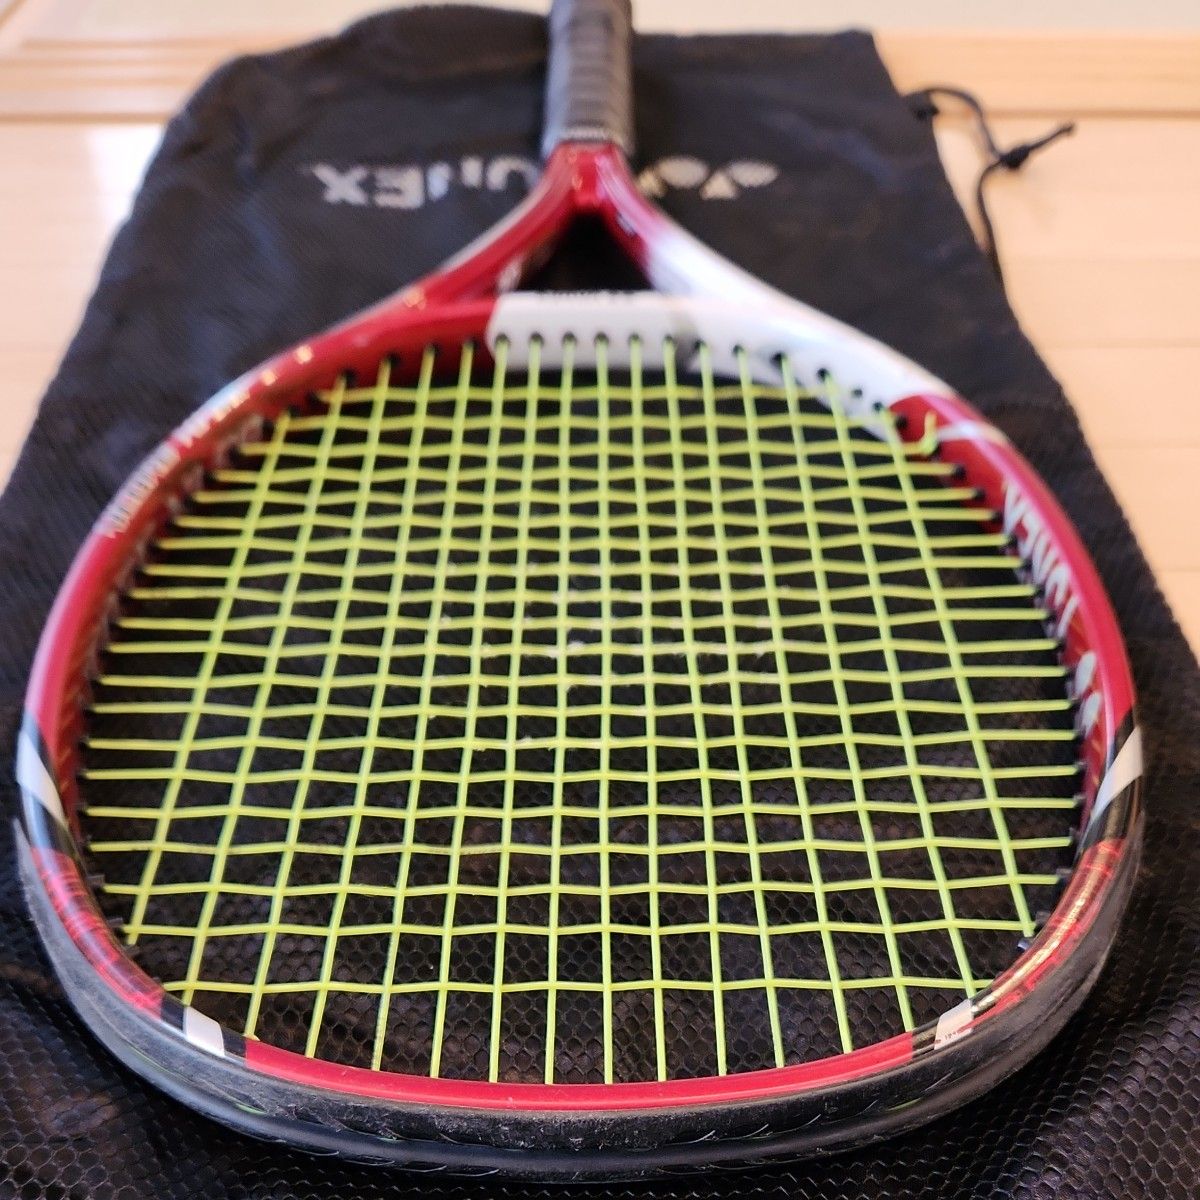 YONEX Vcore xi 98 G3 スマートテニスセンサー対応 エンドキャップ ヨネックス 硬式テニスラケット ブイコア98